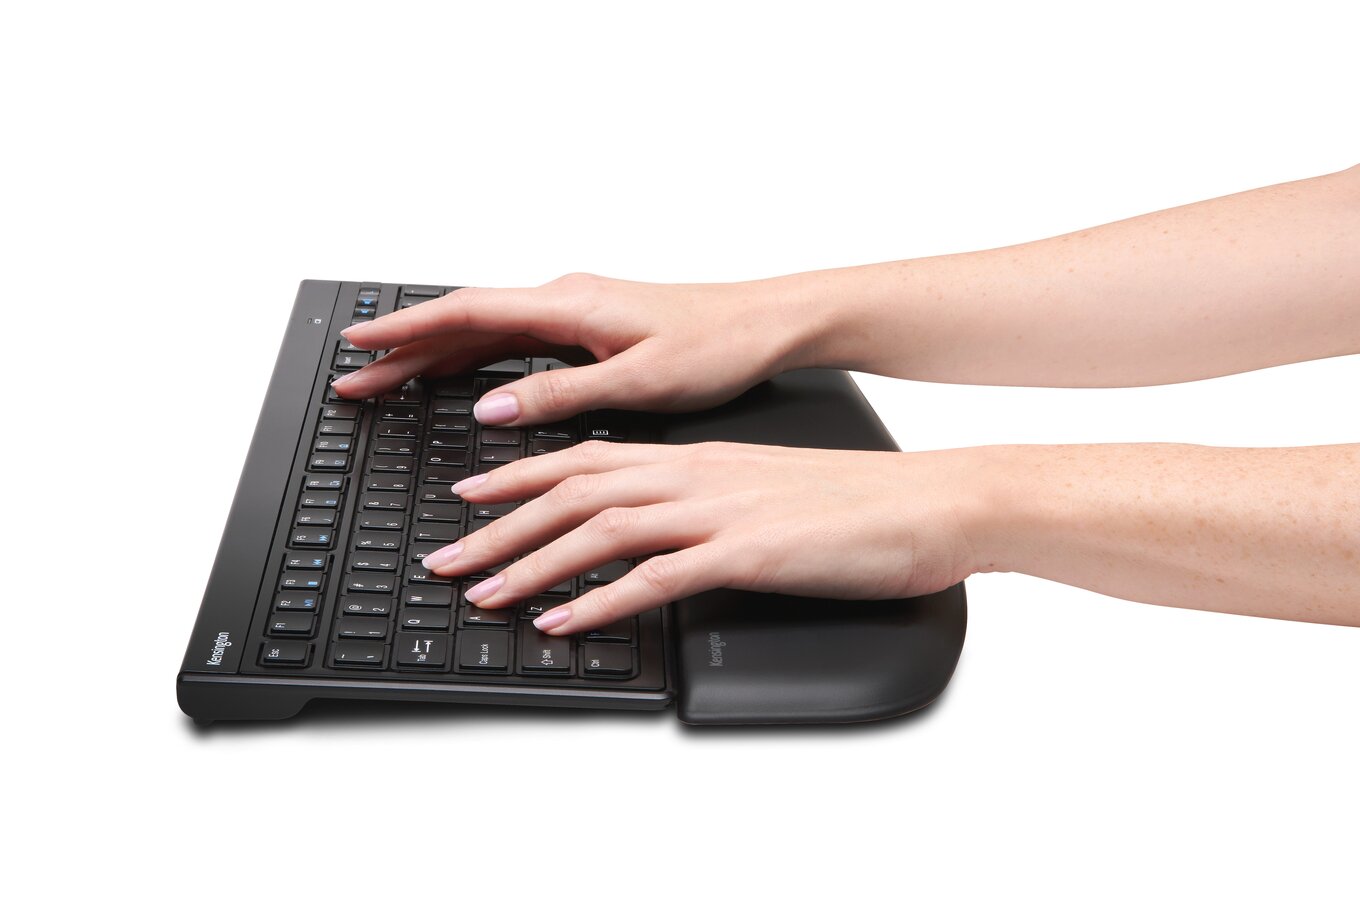 Repose-poignets pour clavier, repose-poignets en mousse à mémoire et en  fibre lisse pour clavier TKL, ergonomique et antidérapant